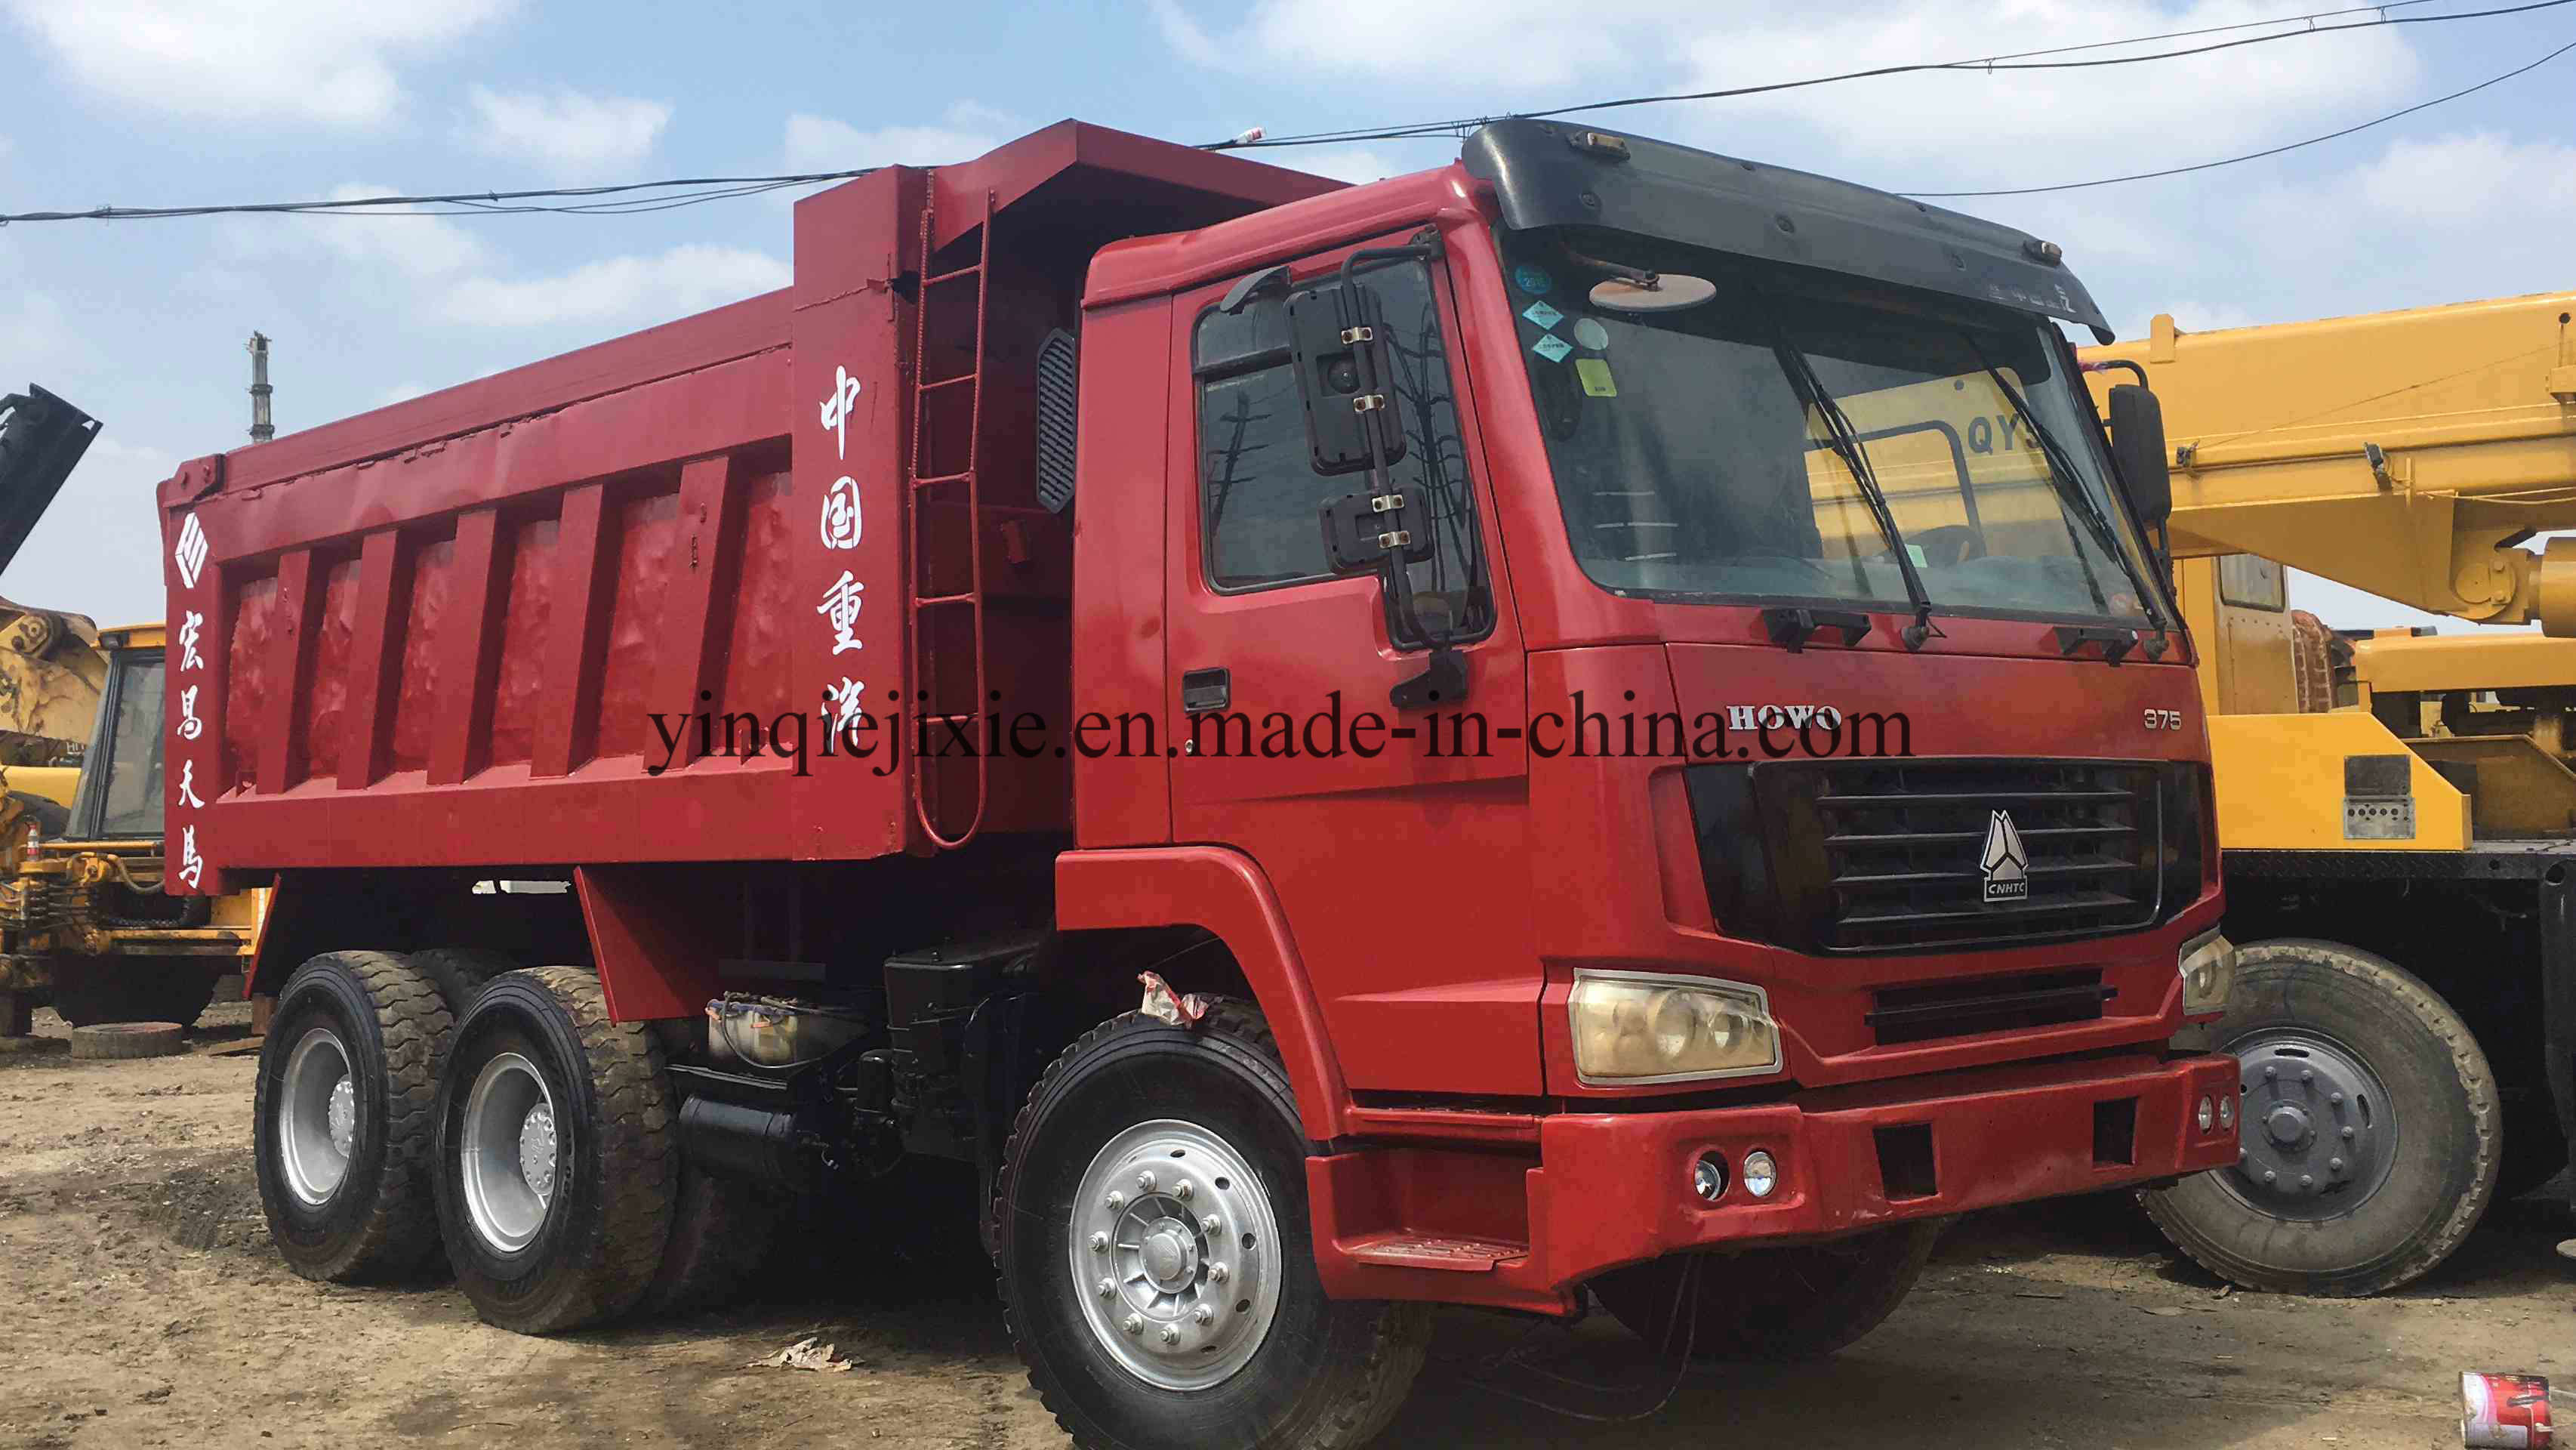 China 
                Gebrauchte HOWO 375 Dump Truck in gutem Zustand von Trust Chinesischer Lieferant
             Lieferant